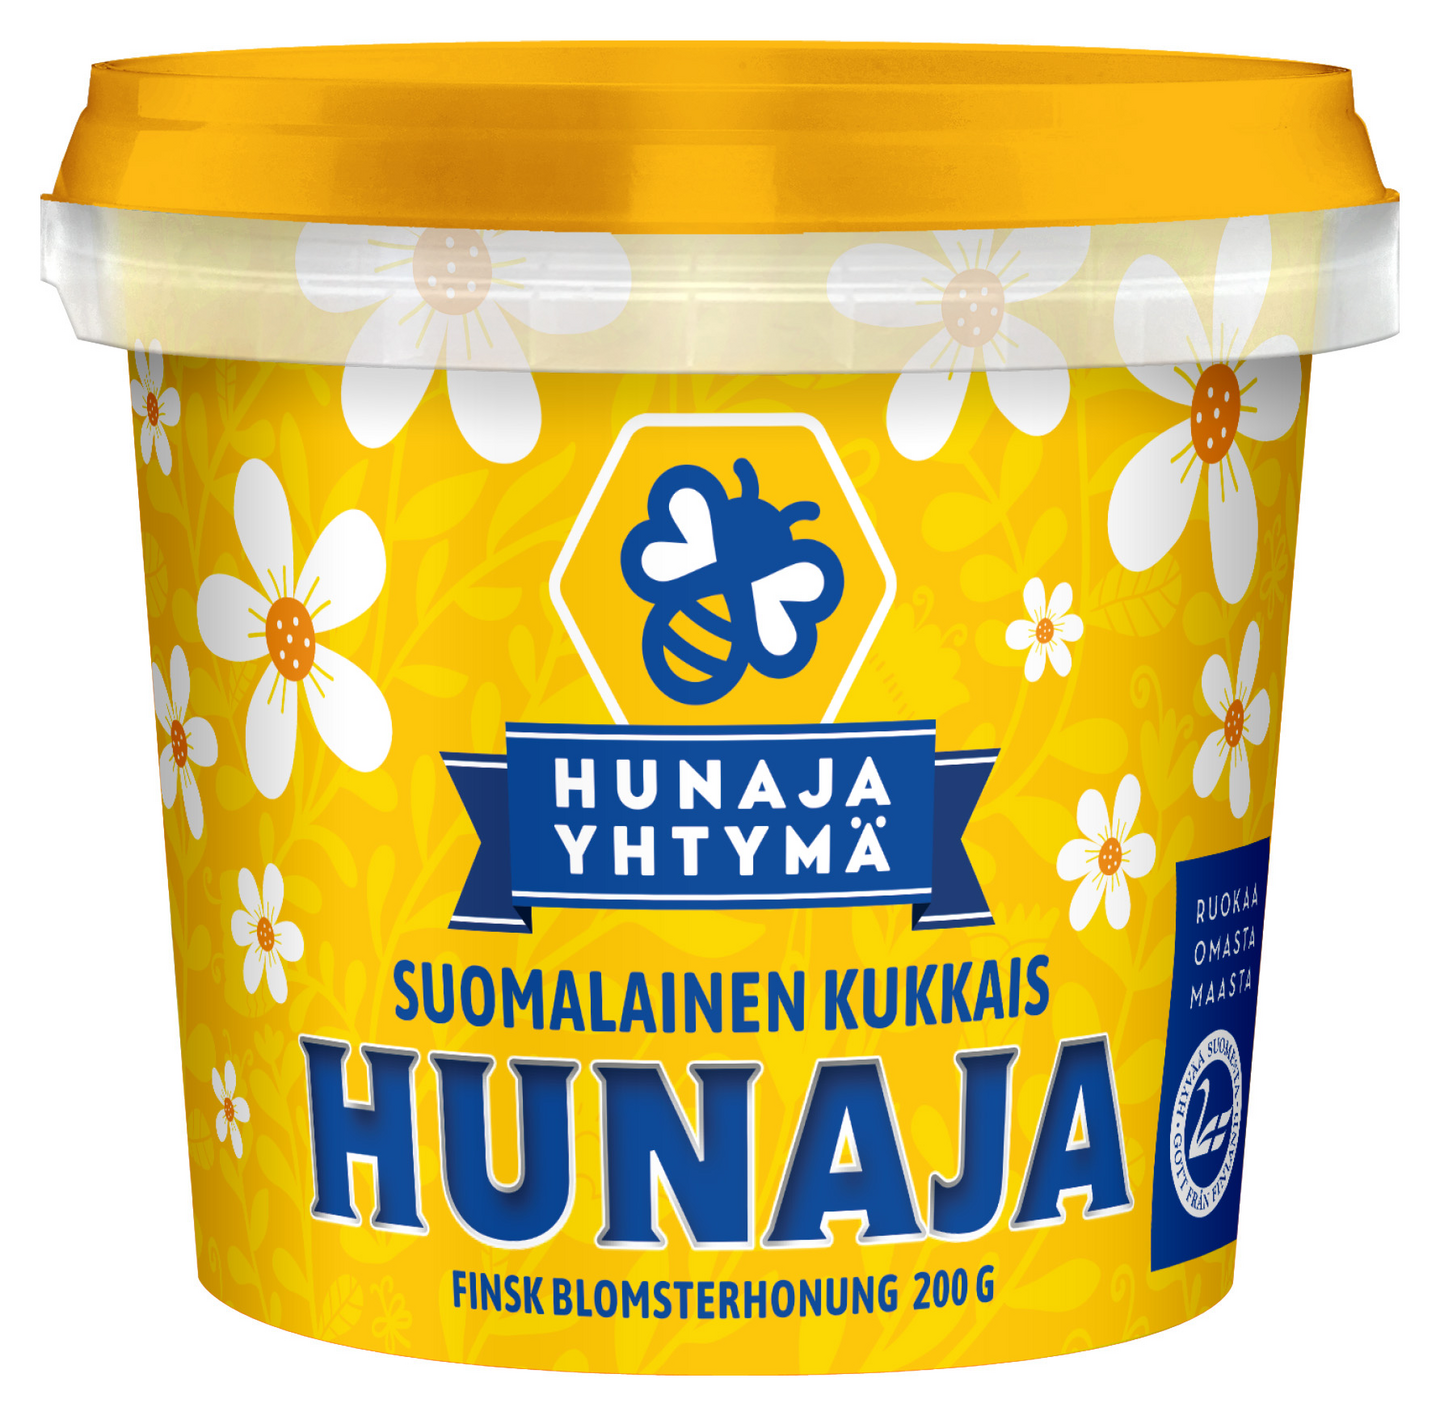 Hunajayhtymä suomalainen kukkaishunaja 200g